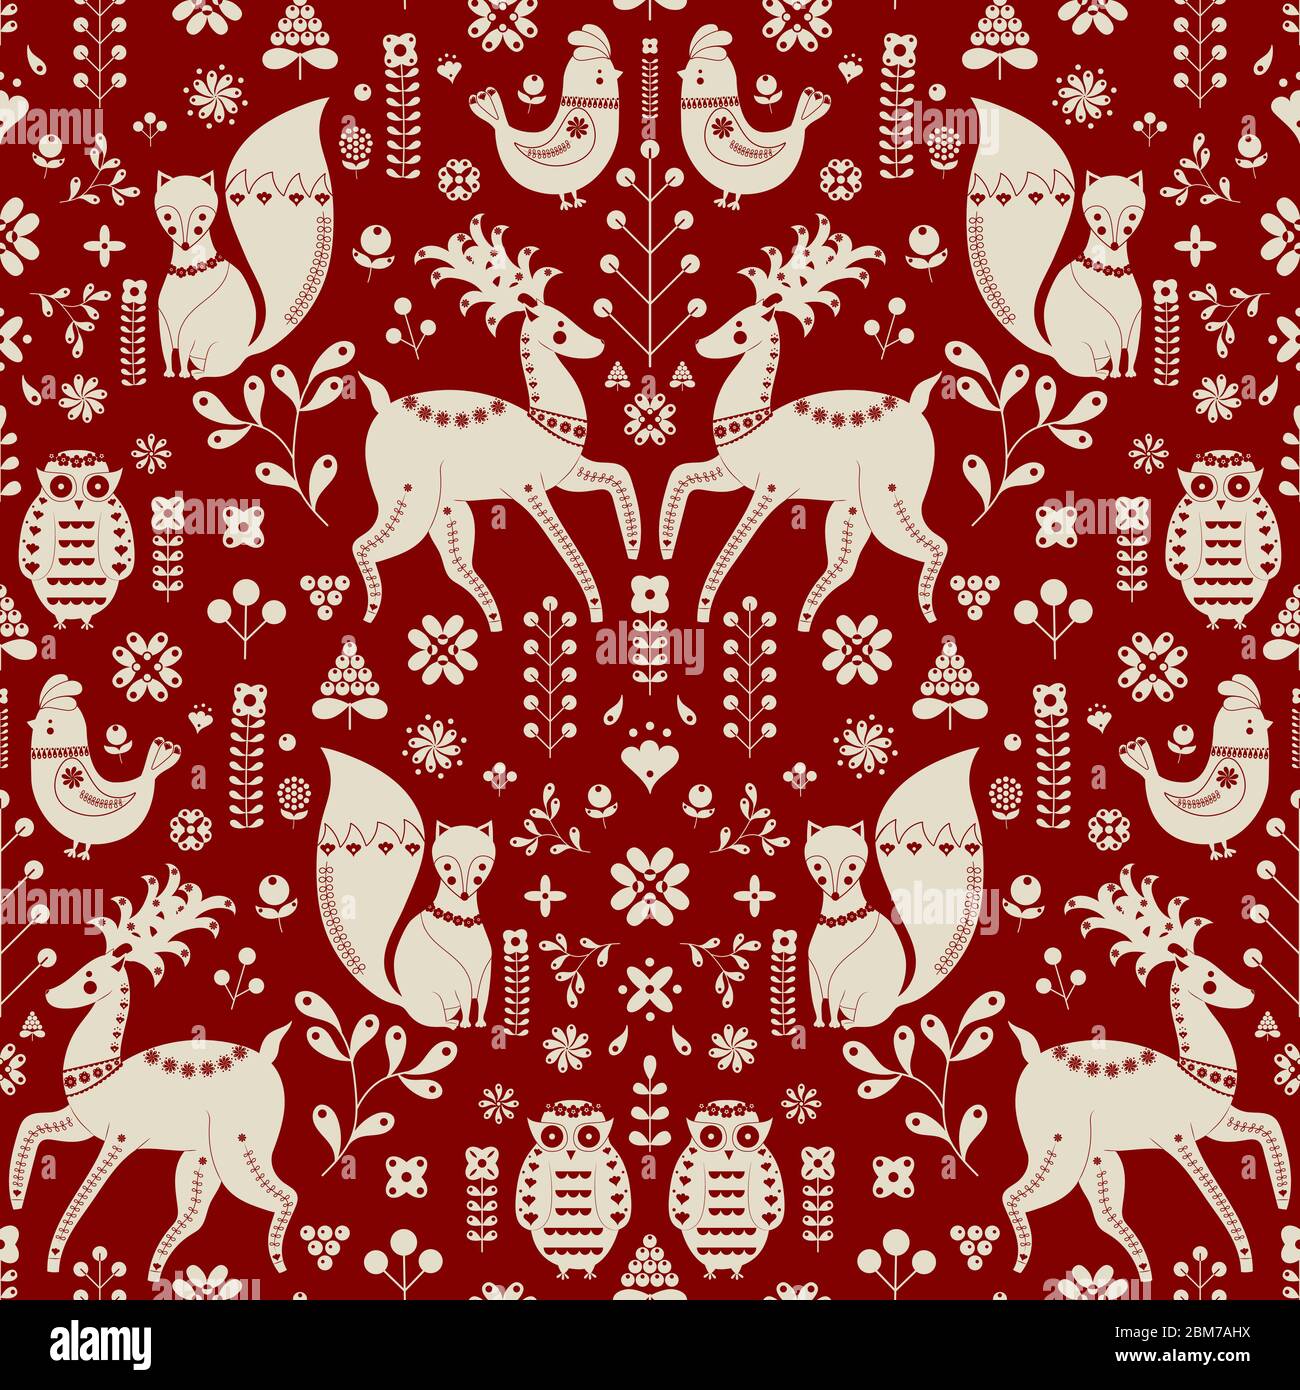 Weihnachtsmuster mit skandinavischen Folk-inspirierten Motiven auf rotem Hintergrund in einer reflektierten Muschelwiederholen. Skandinavische Folklore Weihnachten Stock Vektor